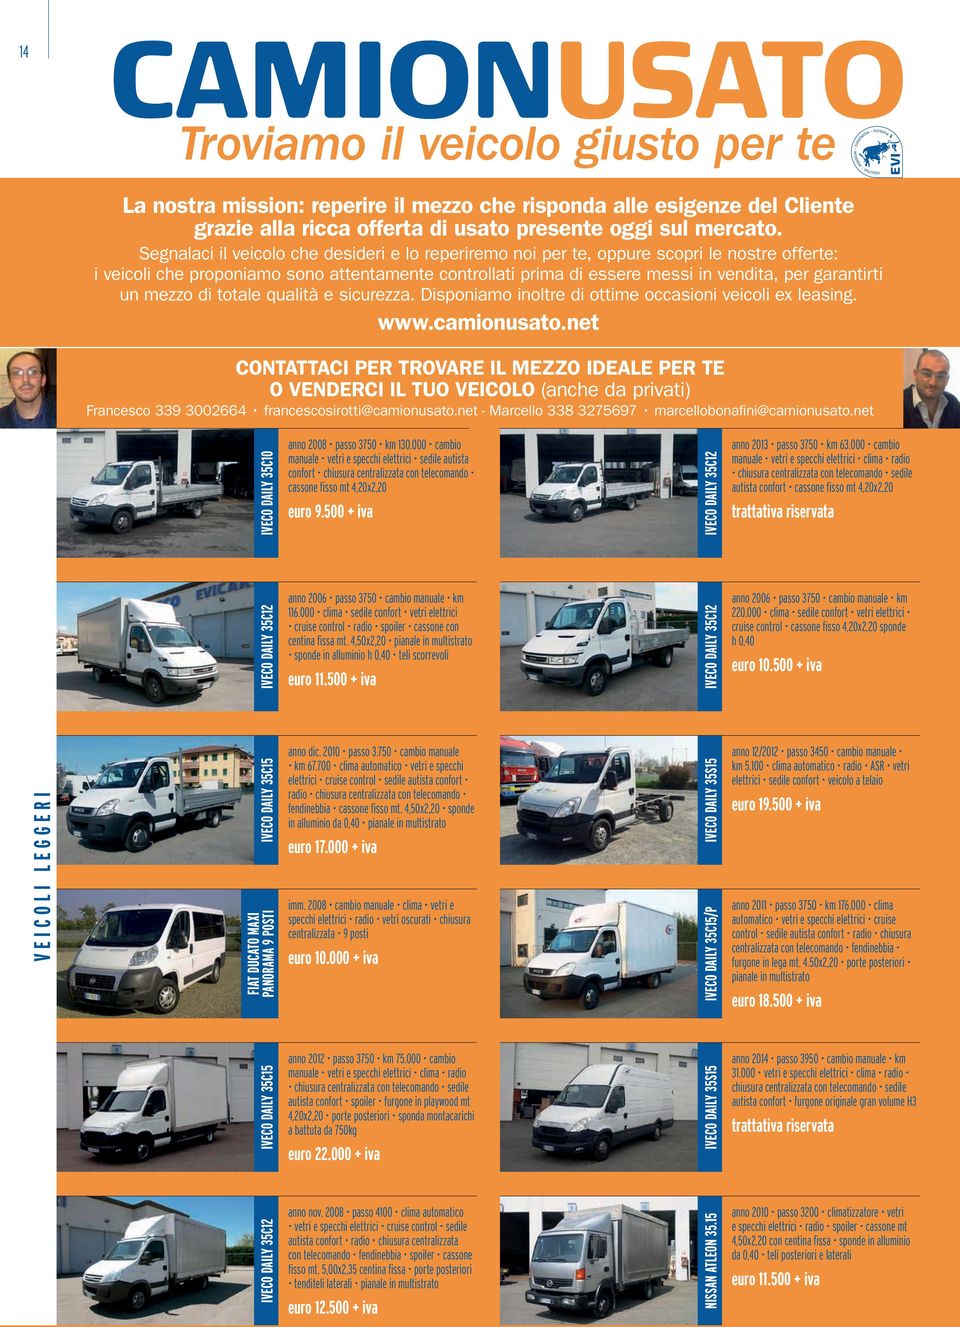 un mezzo di totale qualità e sicurezza. Disponiamo inoltre di ottime occasioni veicoli ex leasing. www.camionusato.